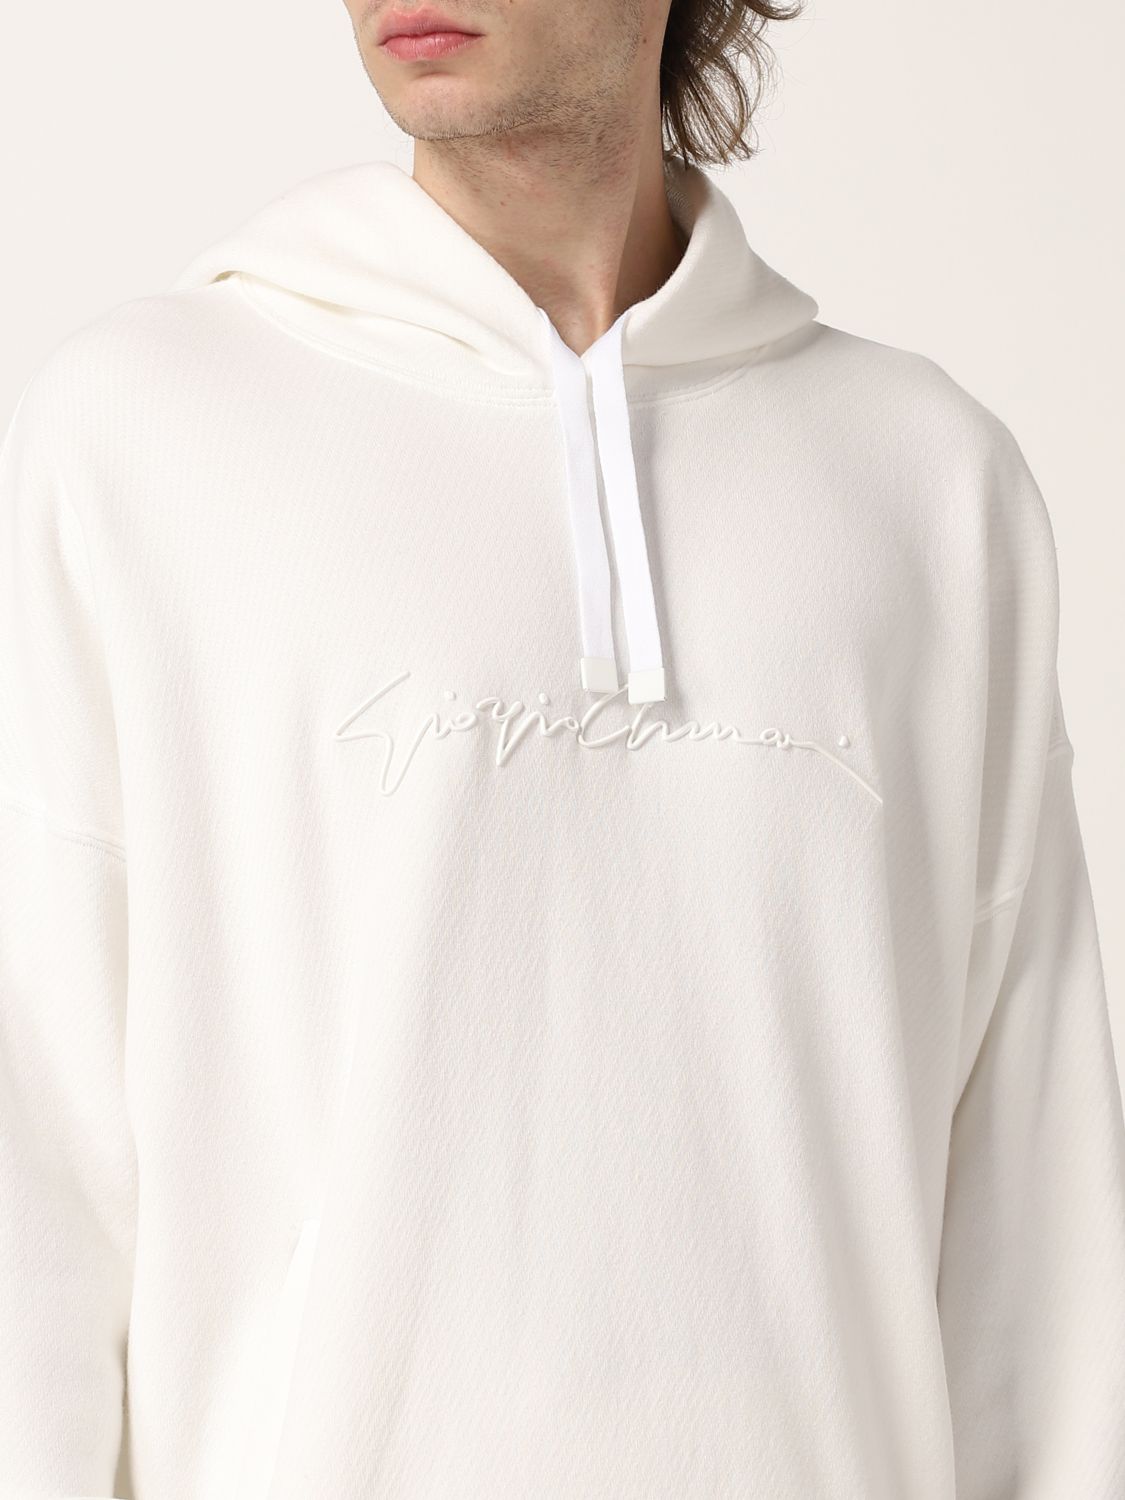 Sweatshirt Giorgio Armani: Sweatshirt Giorgio Armani homme blanc 5